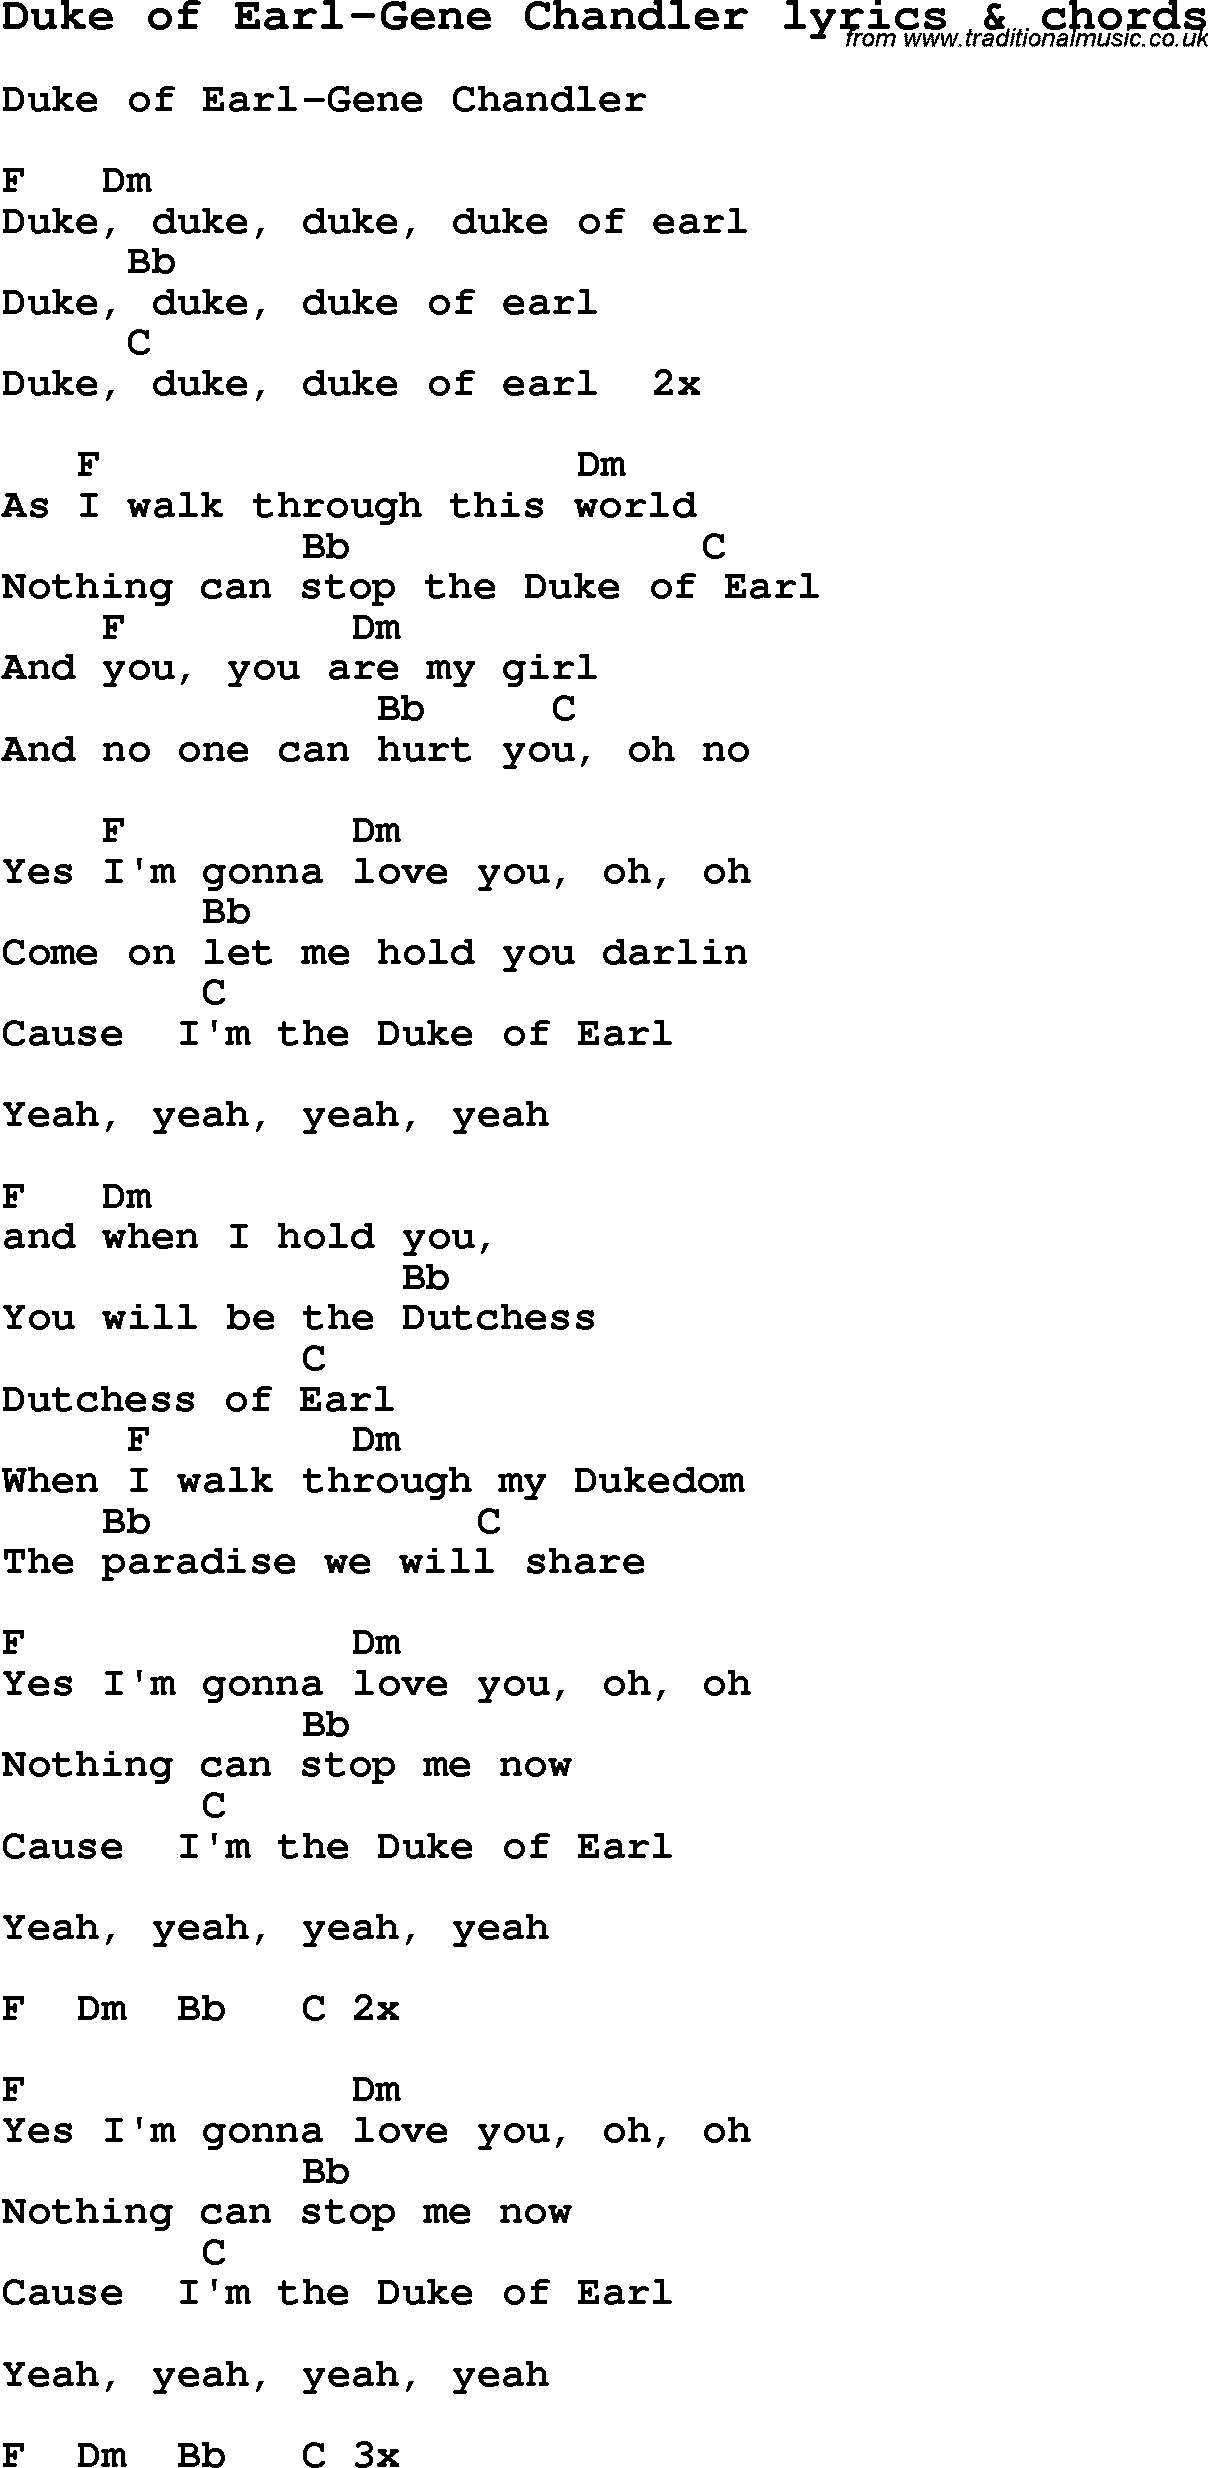 Love Song Lyrics for: Duke of Earl-Gene Chandler with chords for Ukulele, Guitar Banjo etc.